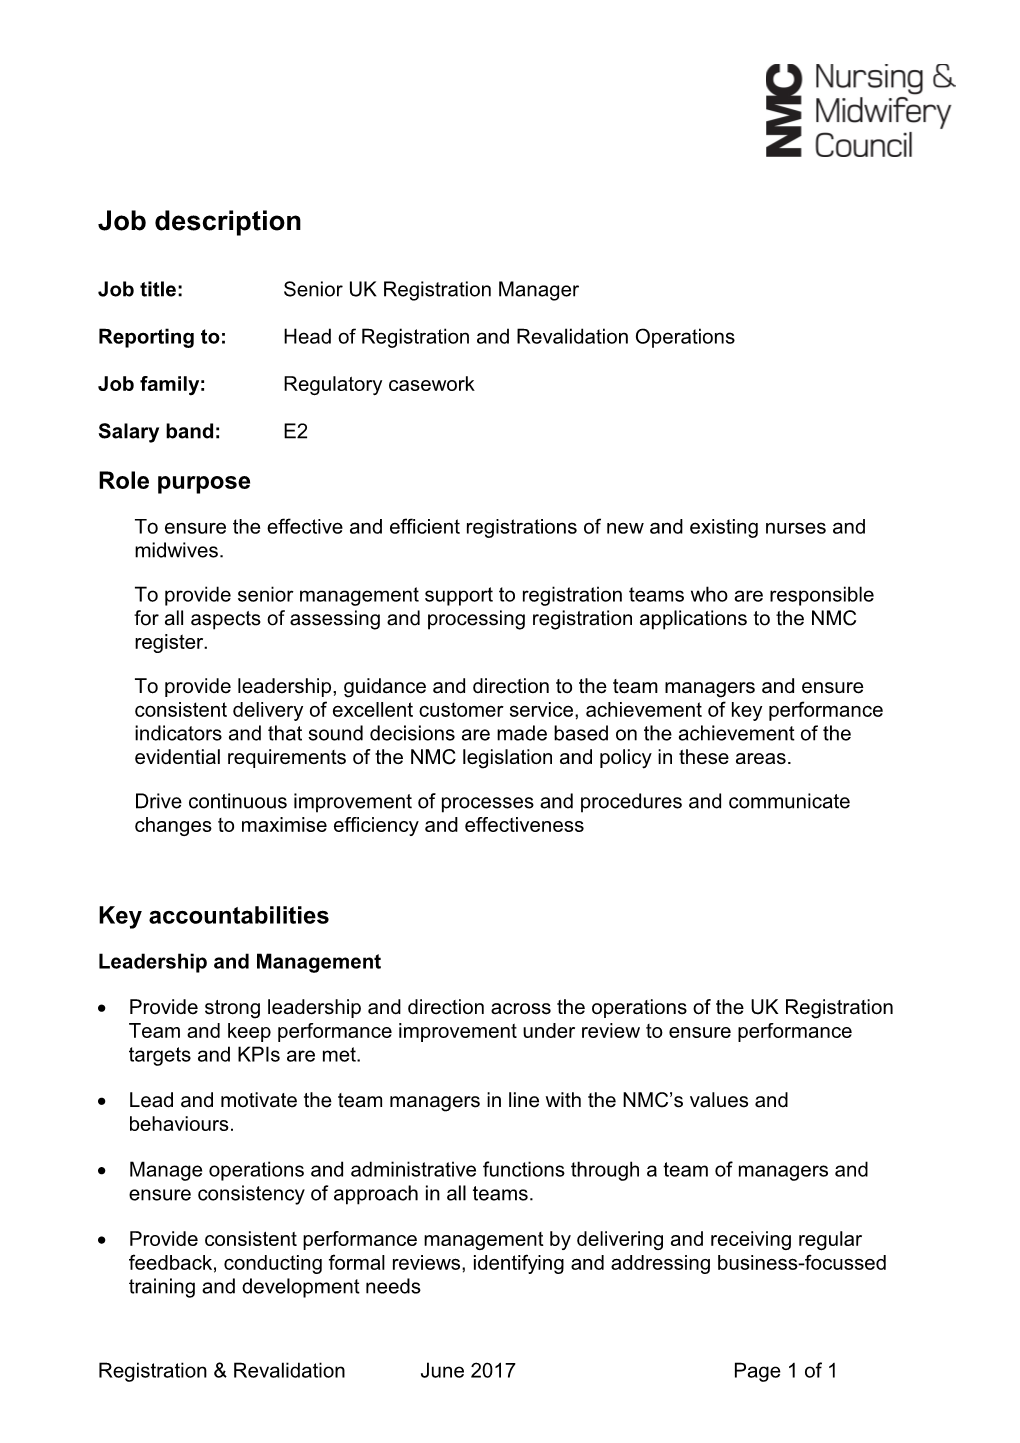 Job Title: Senior UK Registration Manager